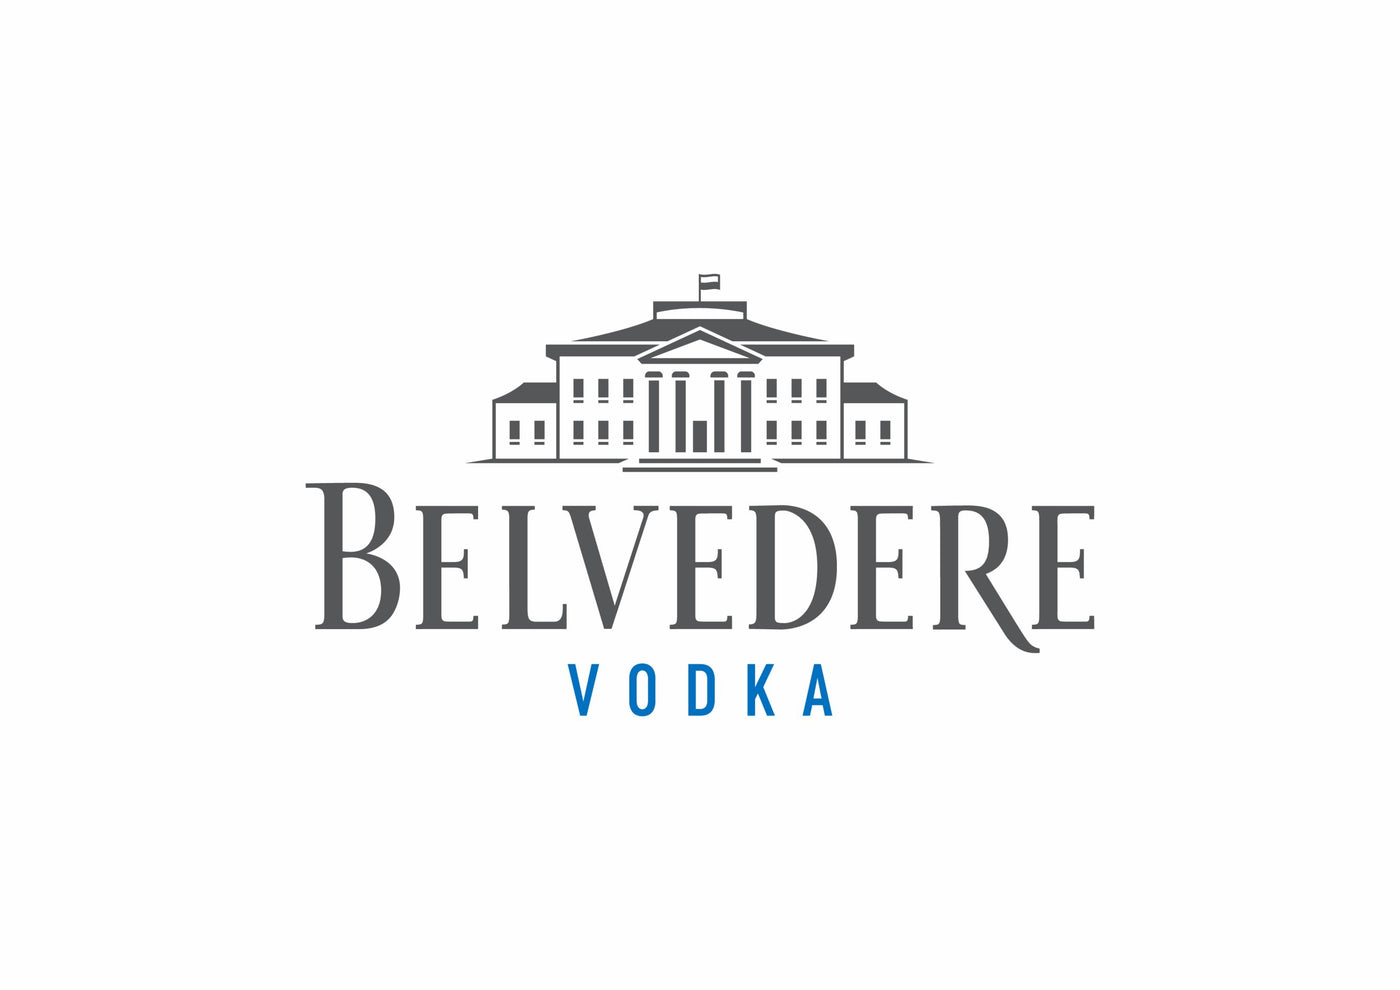 Belvedere